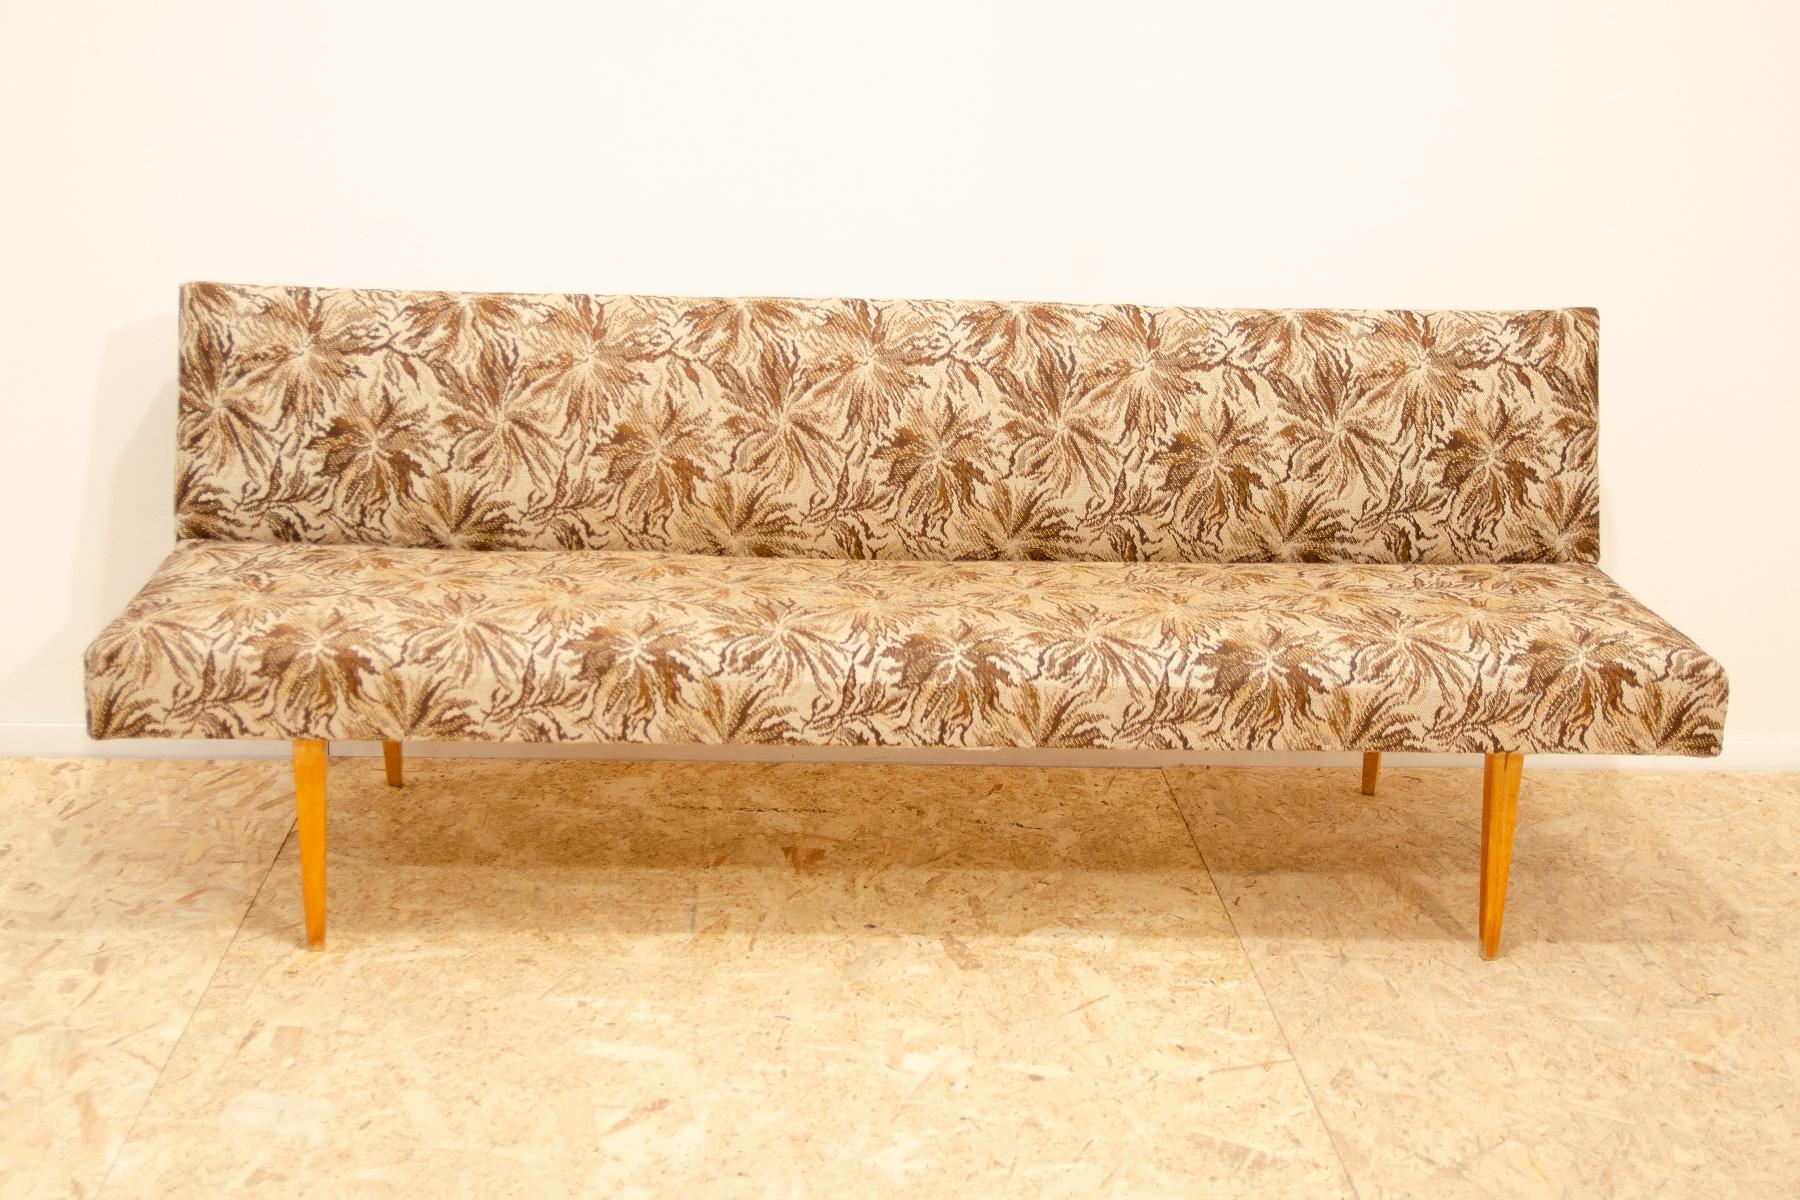 Sofa/Tagesbett aus der Mitte des Jahrhunderts, hergestellt in der ehemaligen Tschechoslowakei in den 1960er Jahren, entworfen von Miroslav Navrátil. MATERIAL: Buchenholz, Stoff. Das Sofa ist in gut erhaltenem Vintage-Zustand, weist leichte Alters-